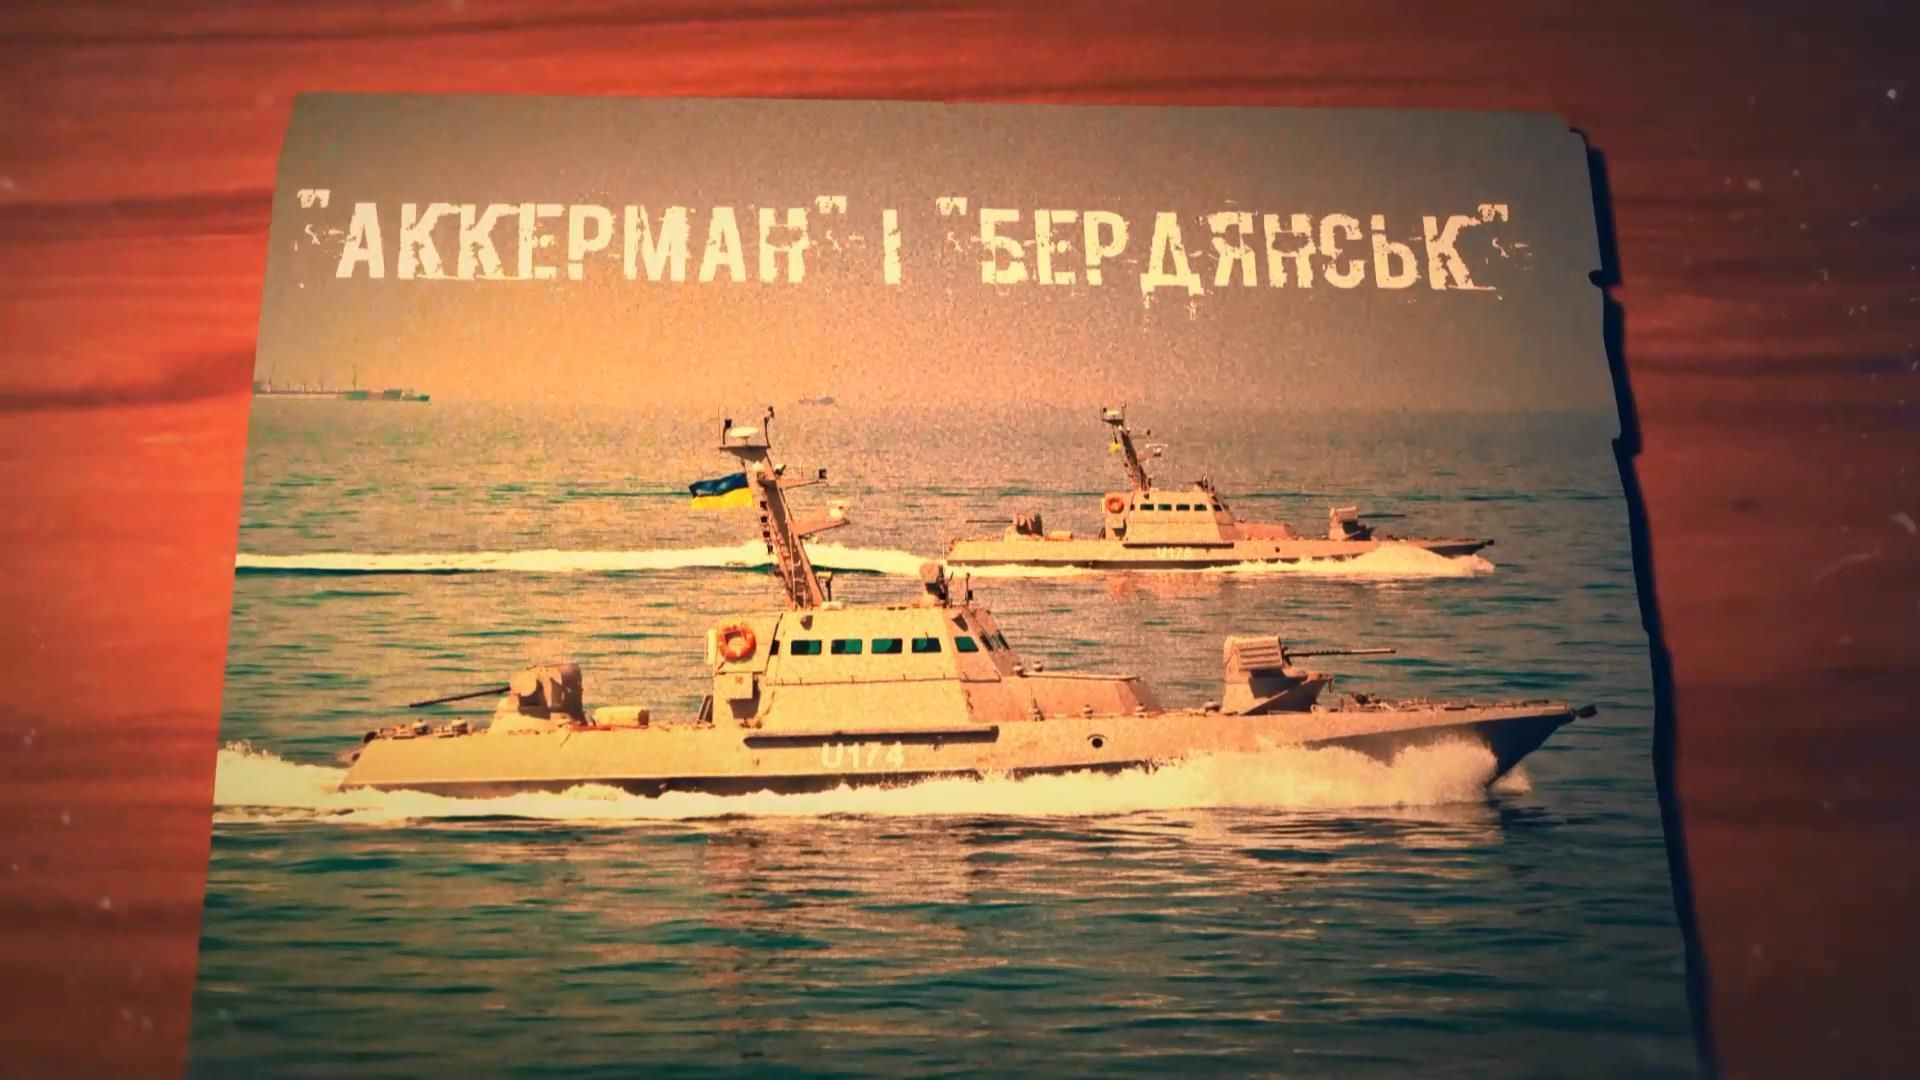 Грозная сила морей: как создавали современные боевые катера "Бердянск" и "Аккерман"
